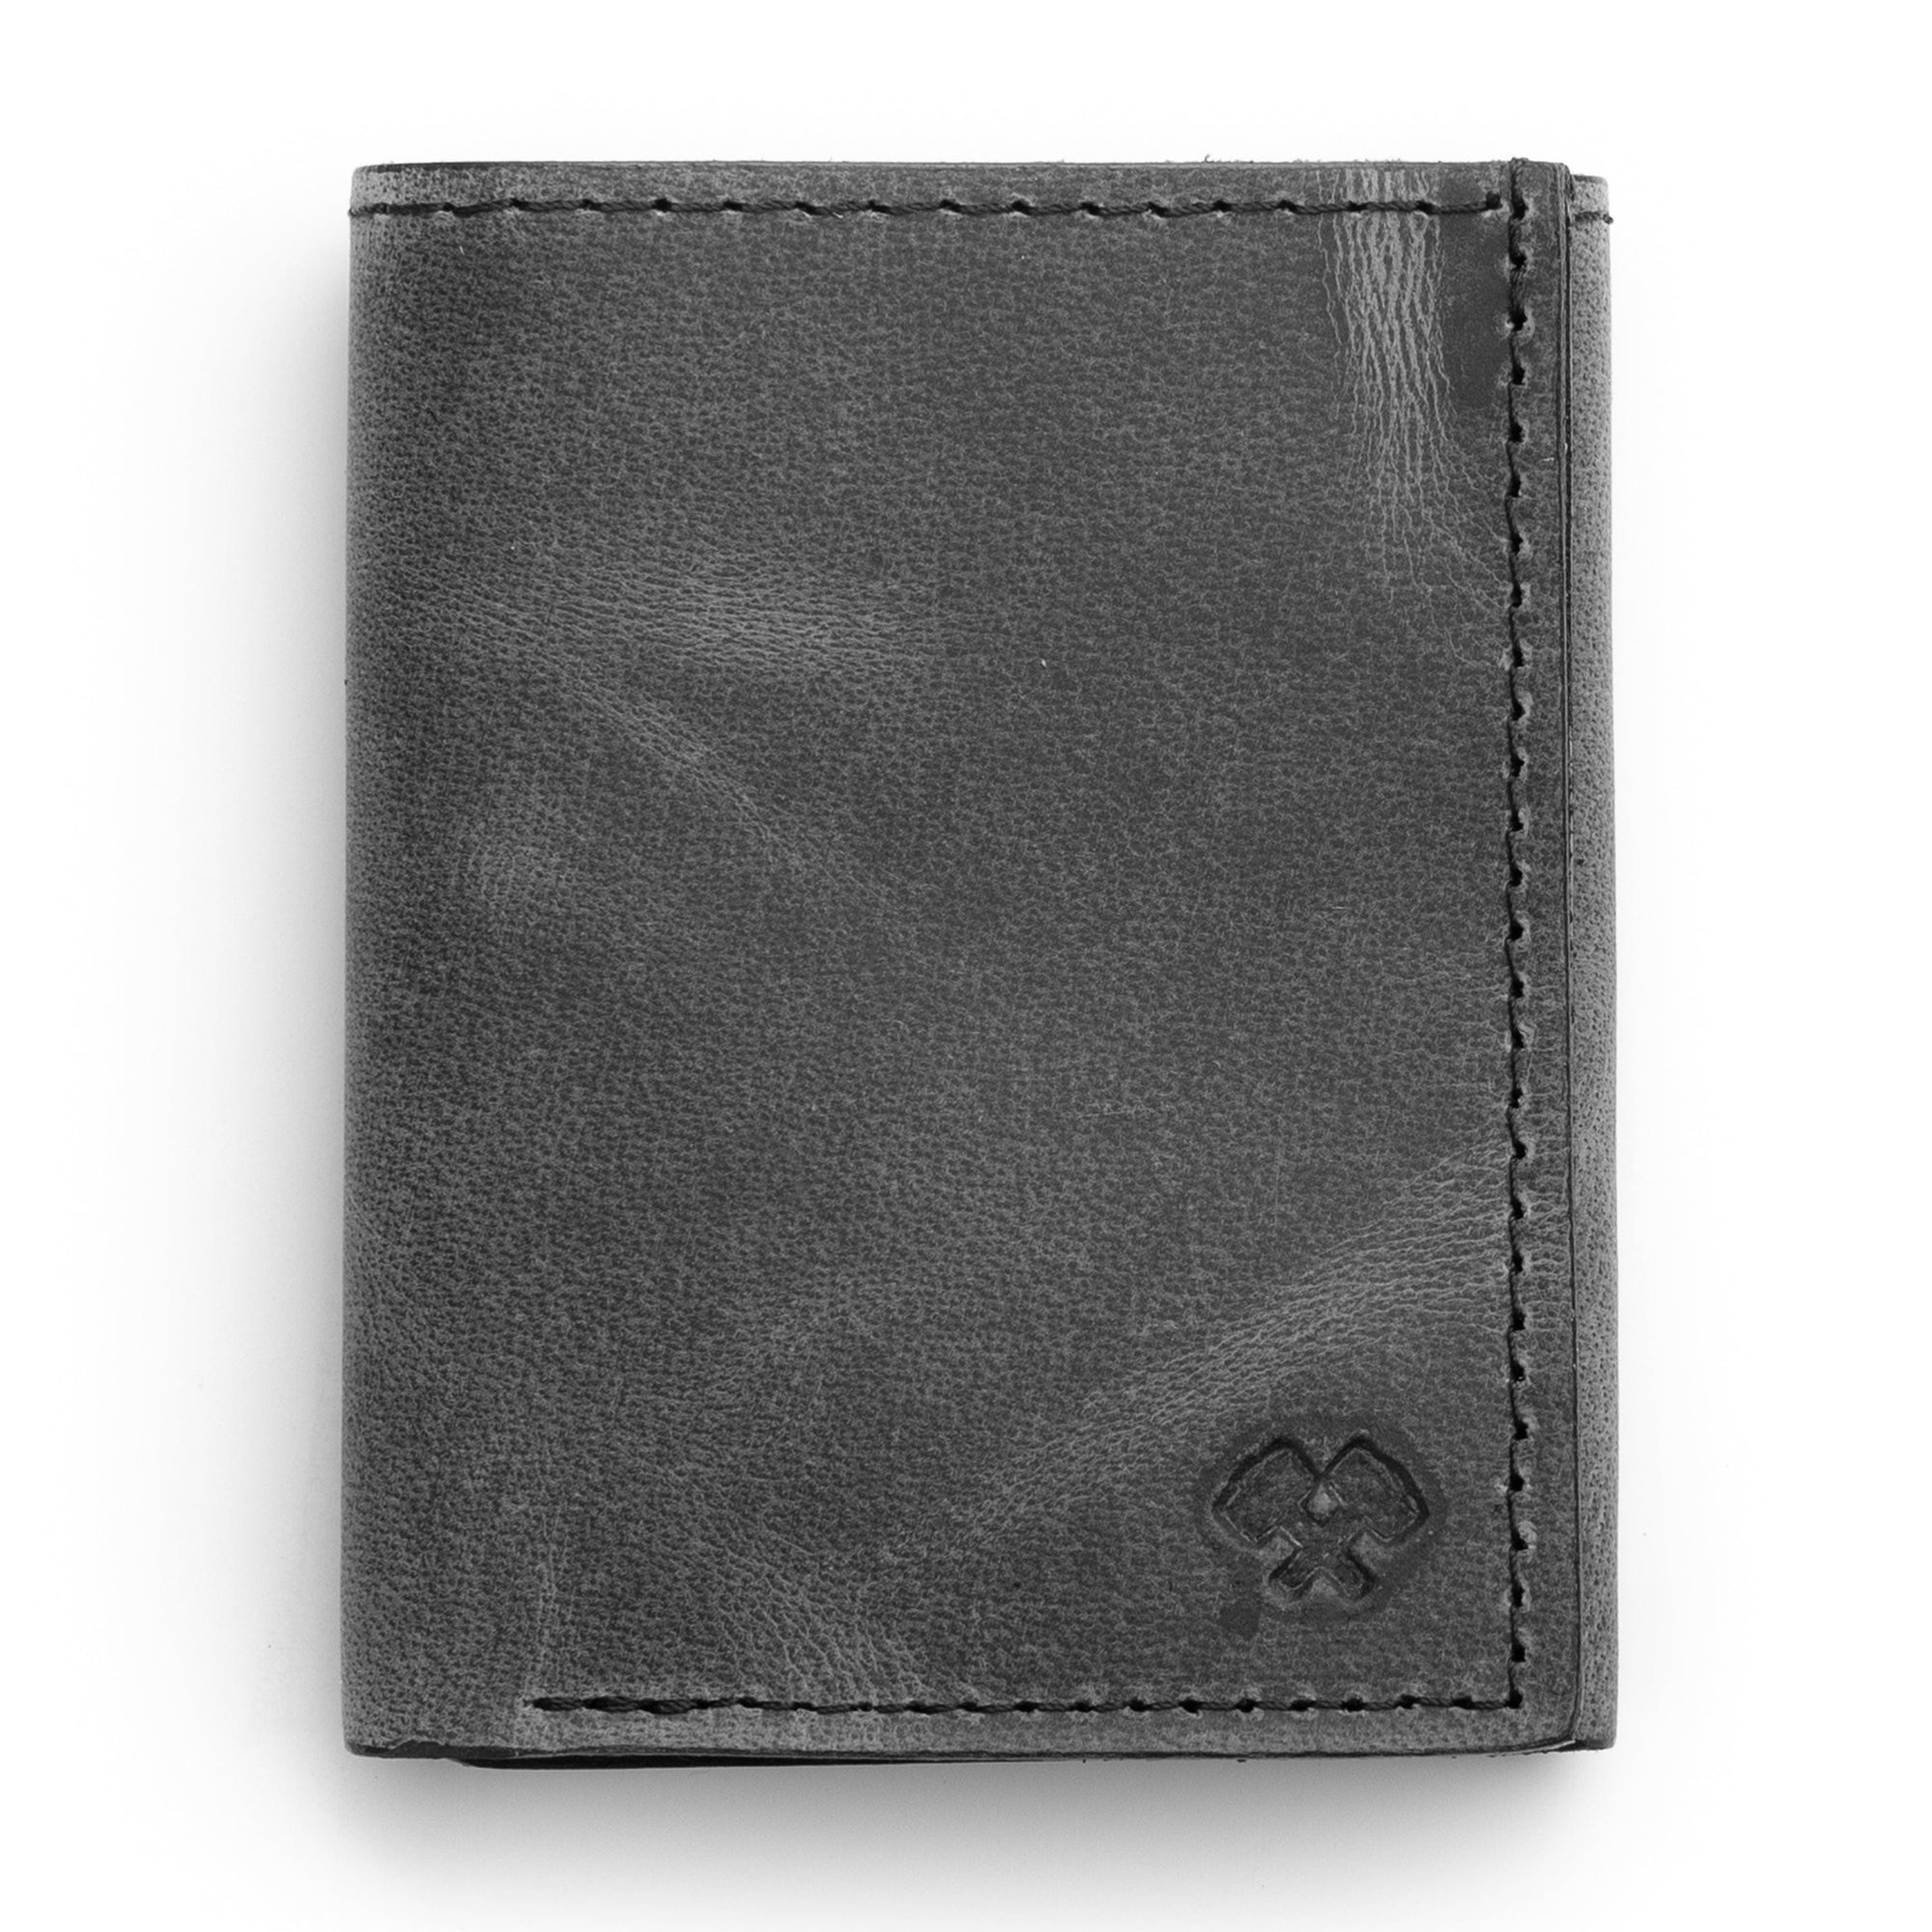 Genuine Leather Men's Wallet| Shop Redhorns Branded Men's Wallet